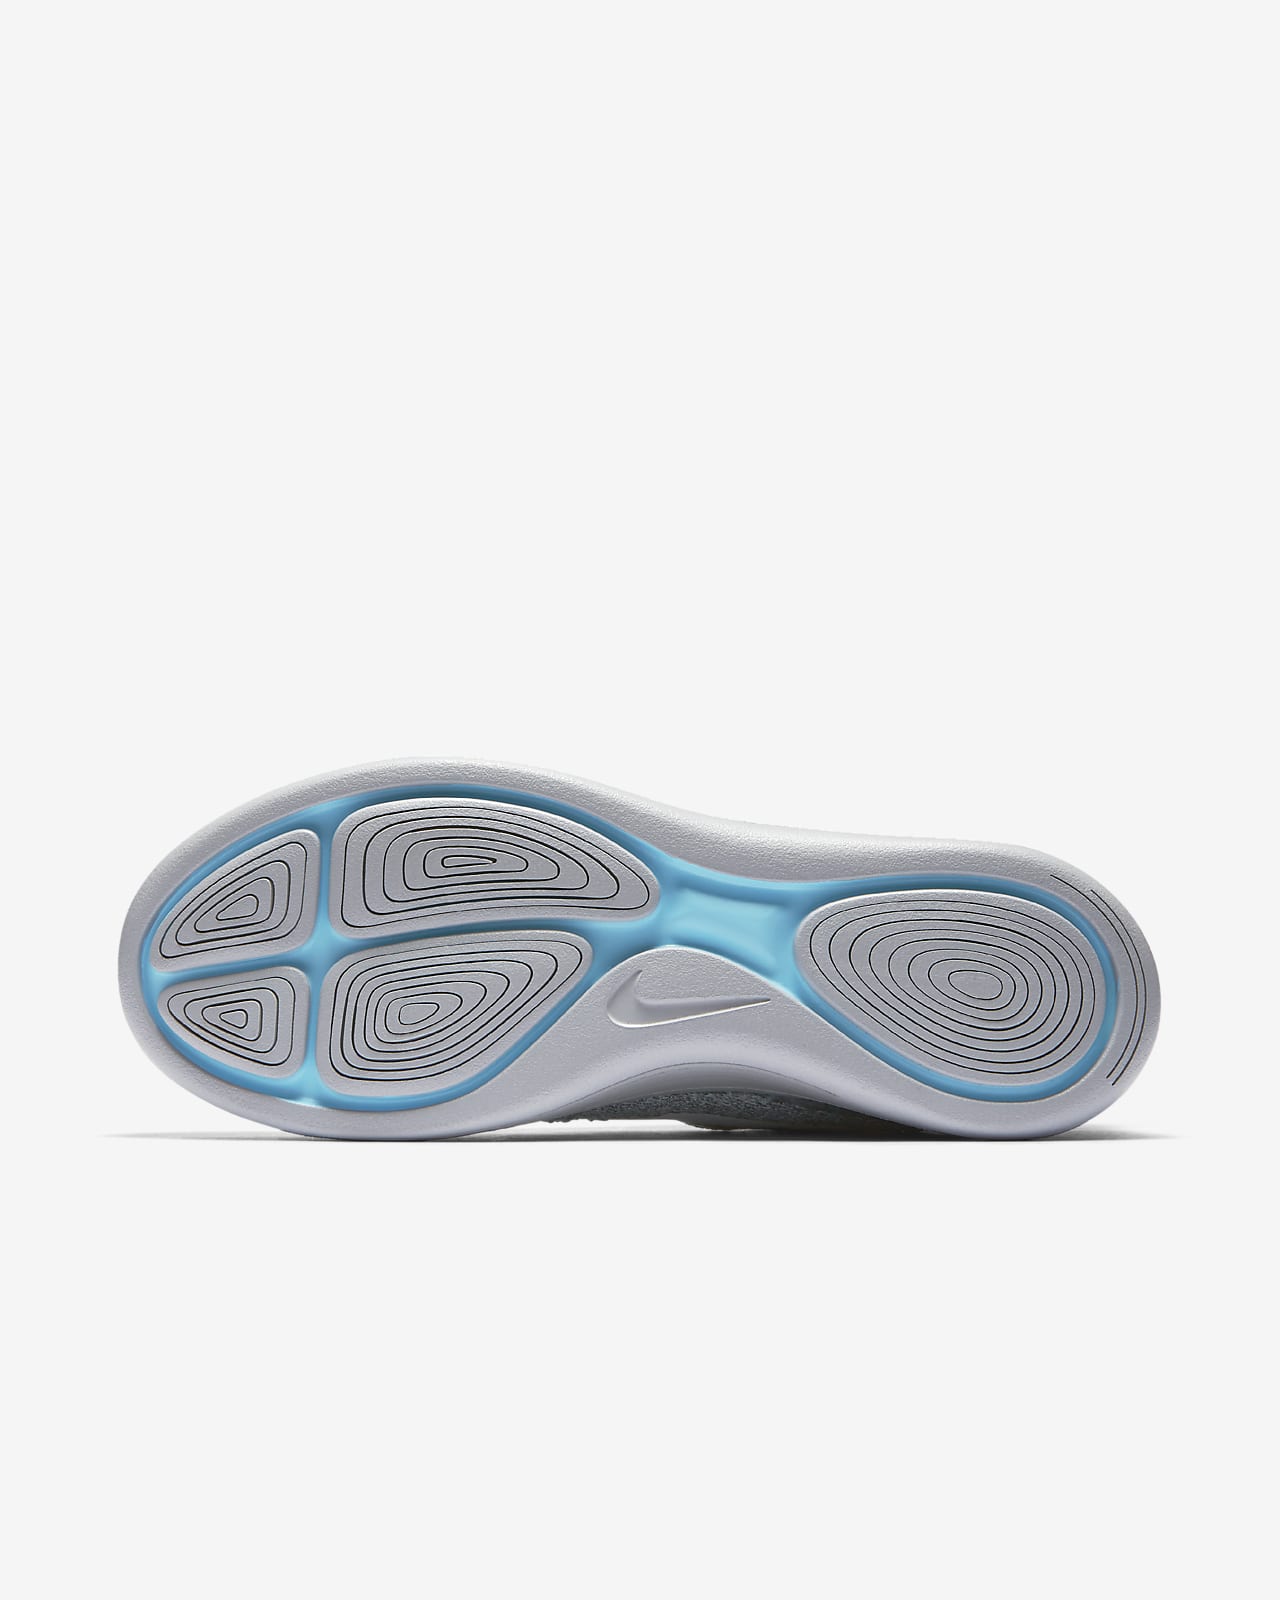 Nike LunarEpic Low Flyknit 2 男子跑步鞋 